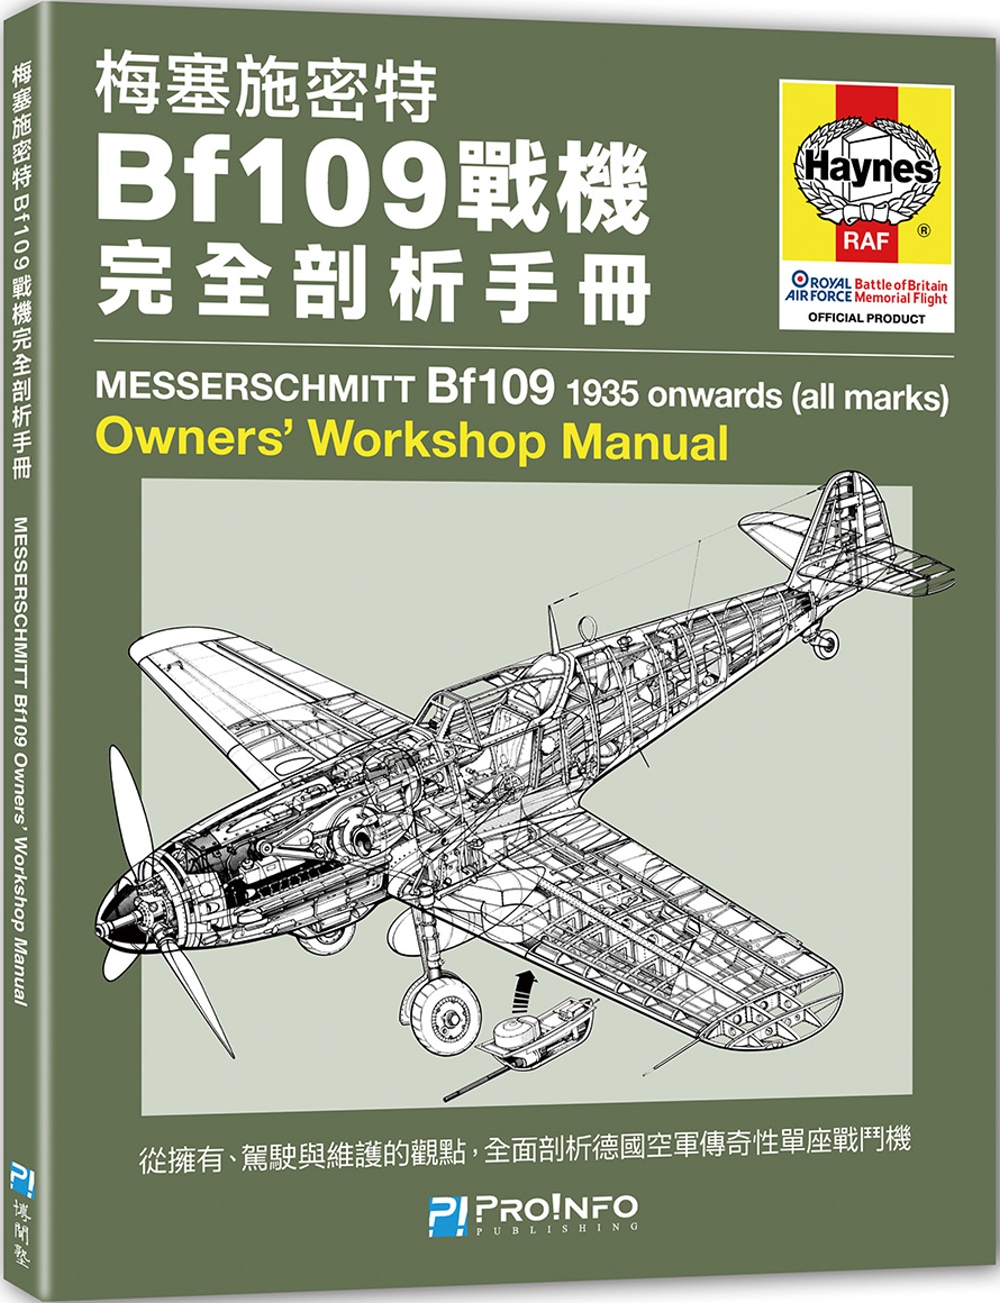 梅塞施密特Bf109戰機完全剖析手冊